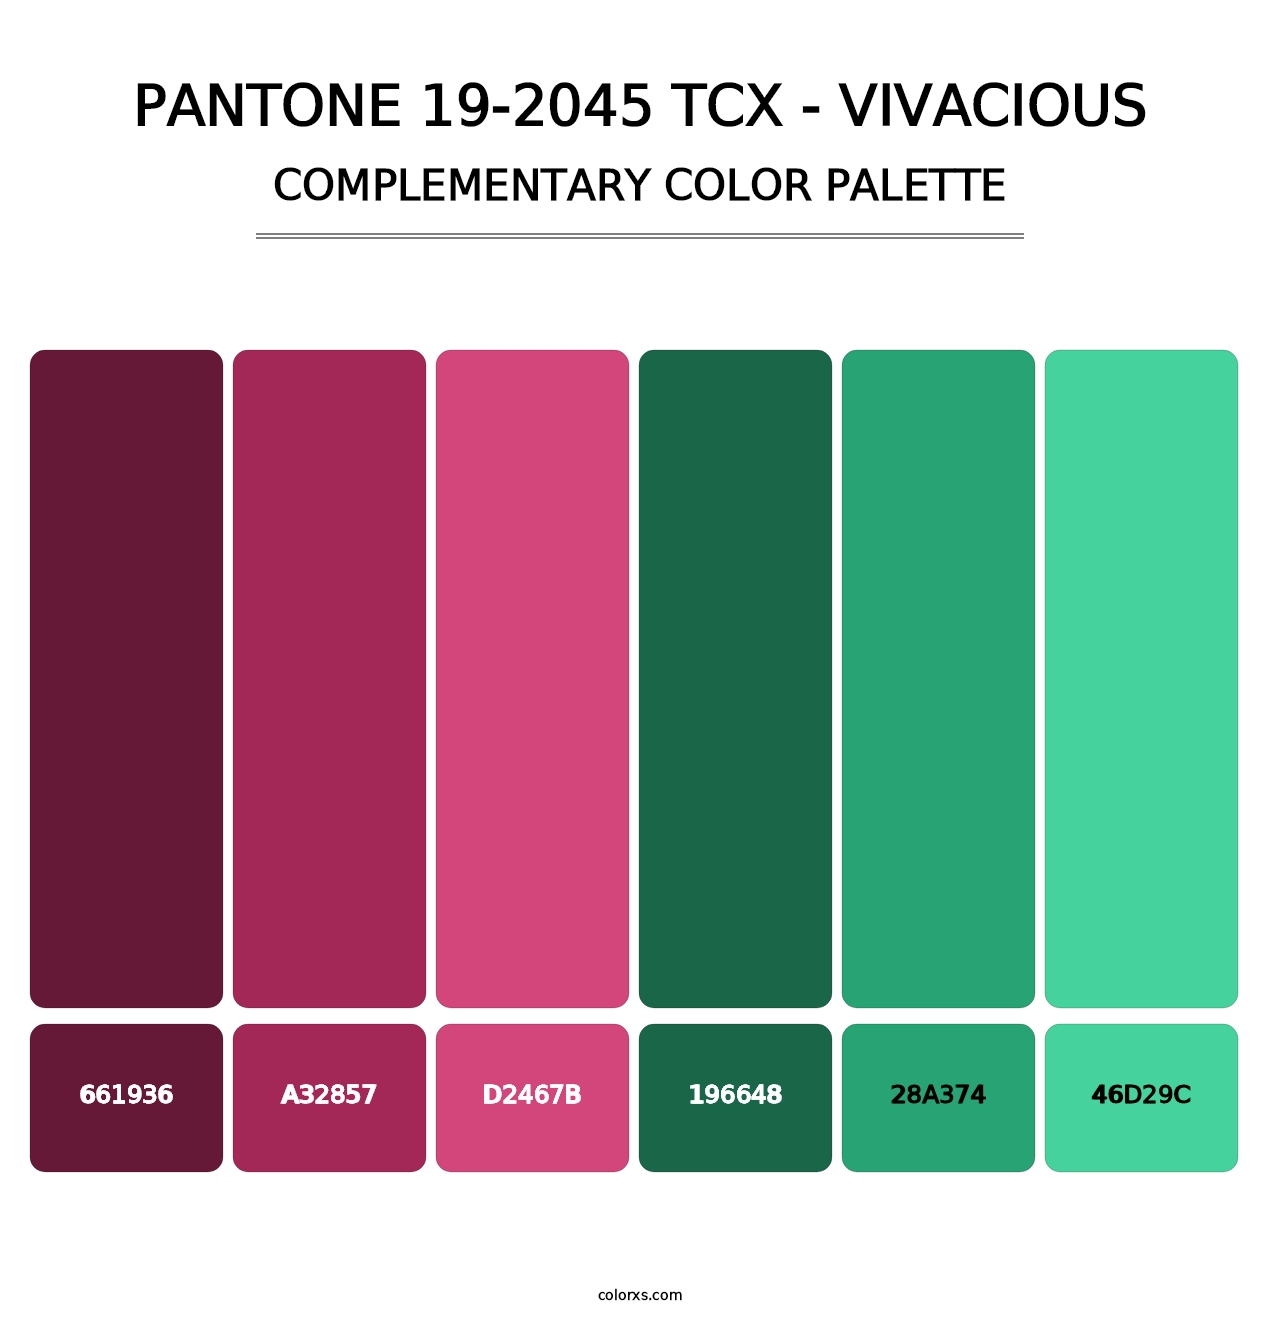 PANTONE 19-2045 TCX - Vivacious - Complementary Color Palette